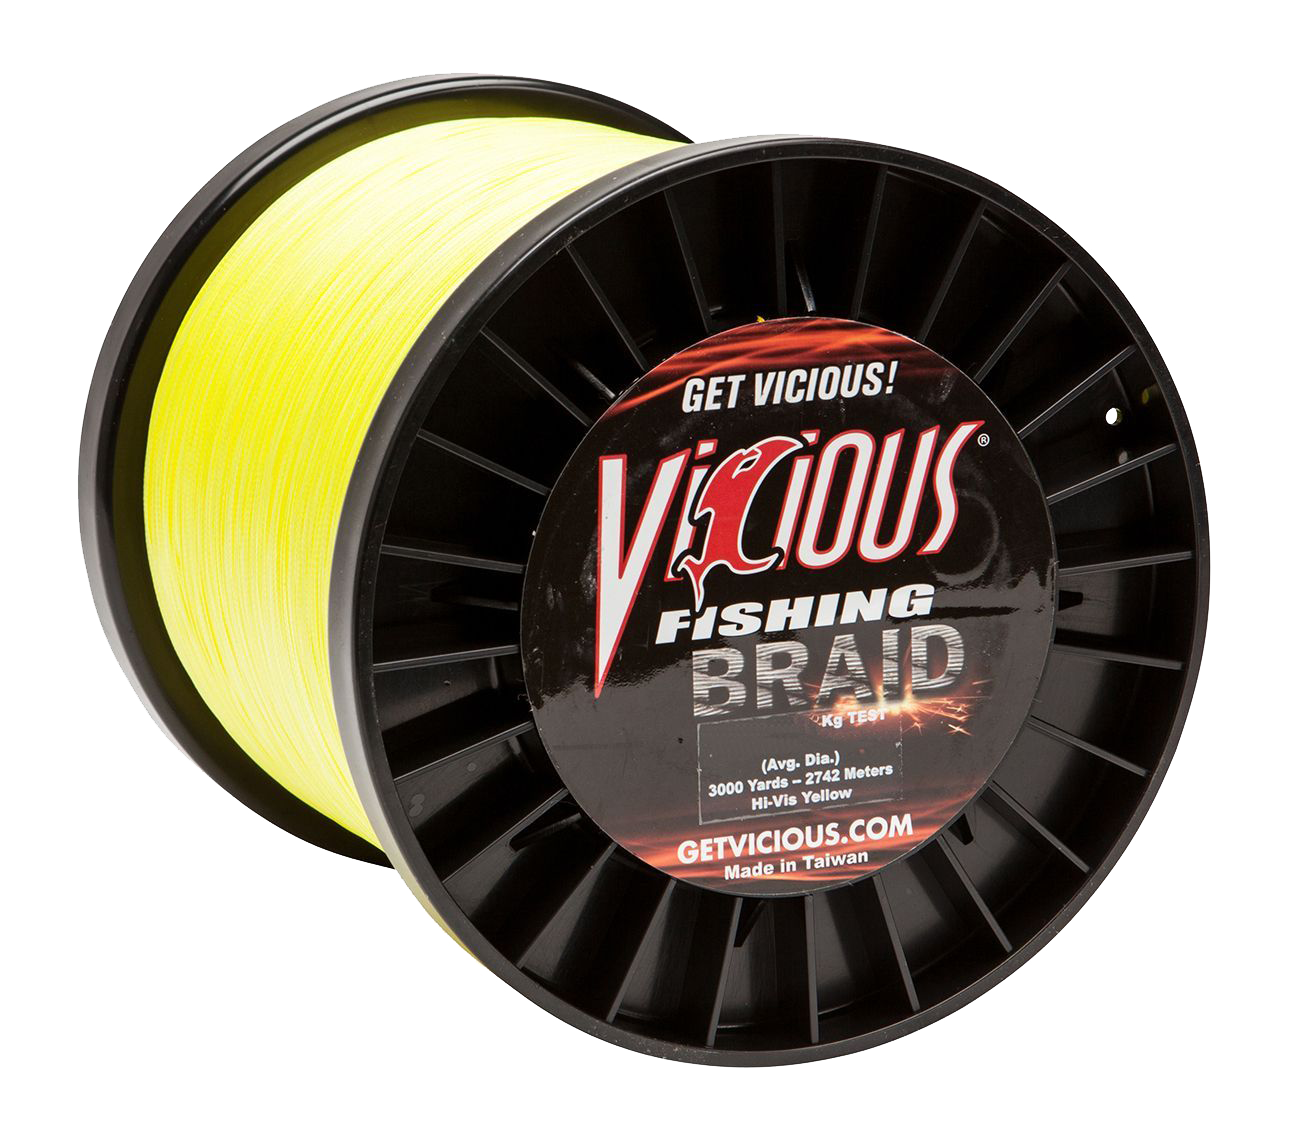 Vicious Fishing Standard Braid Fishing Line - Hi-Vis Yellow - 3000 Yards - 120 lb.